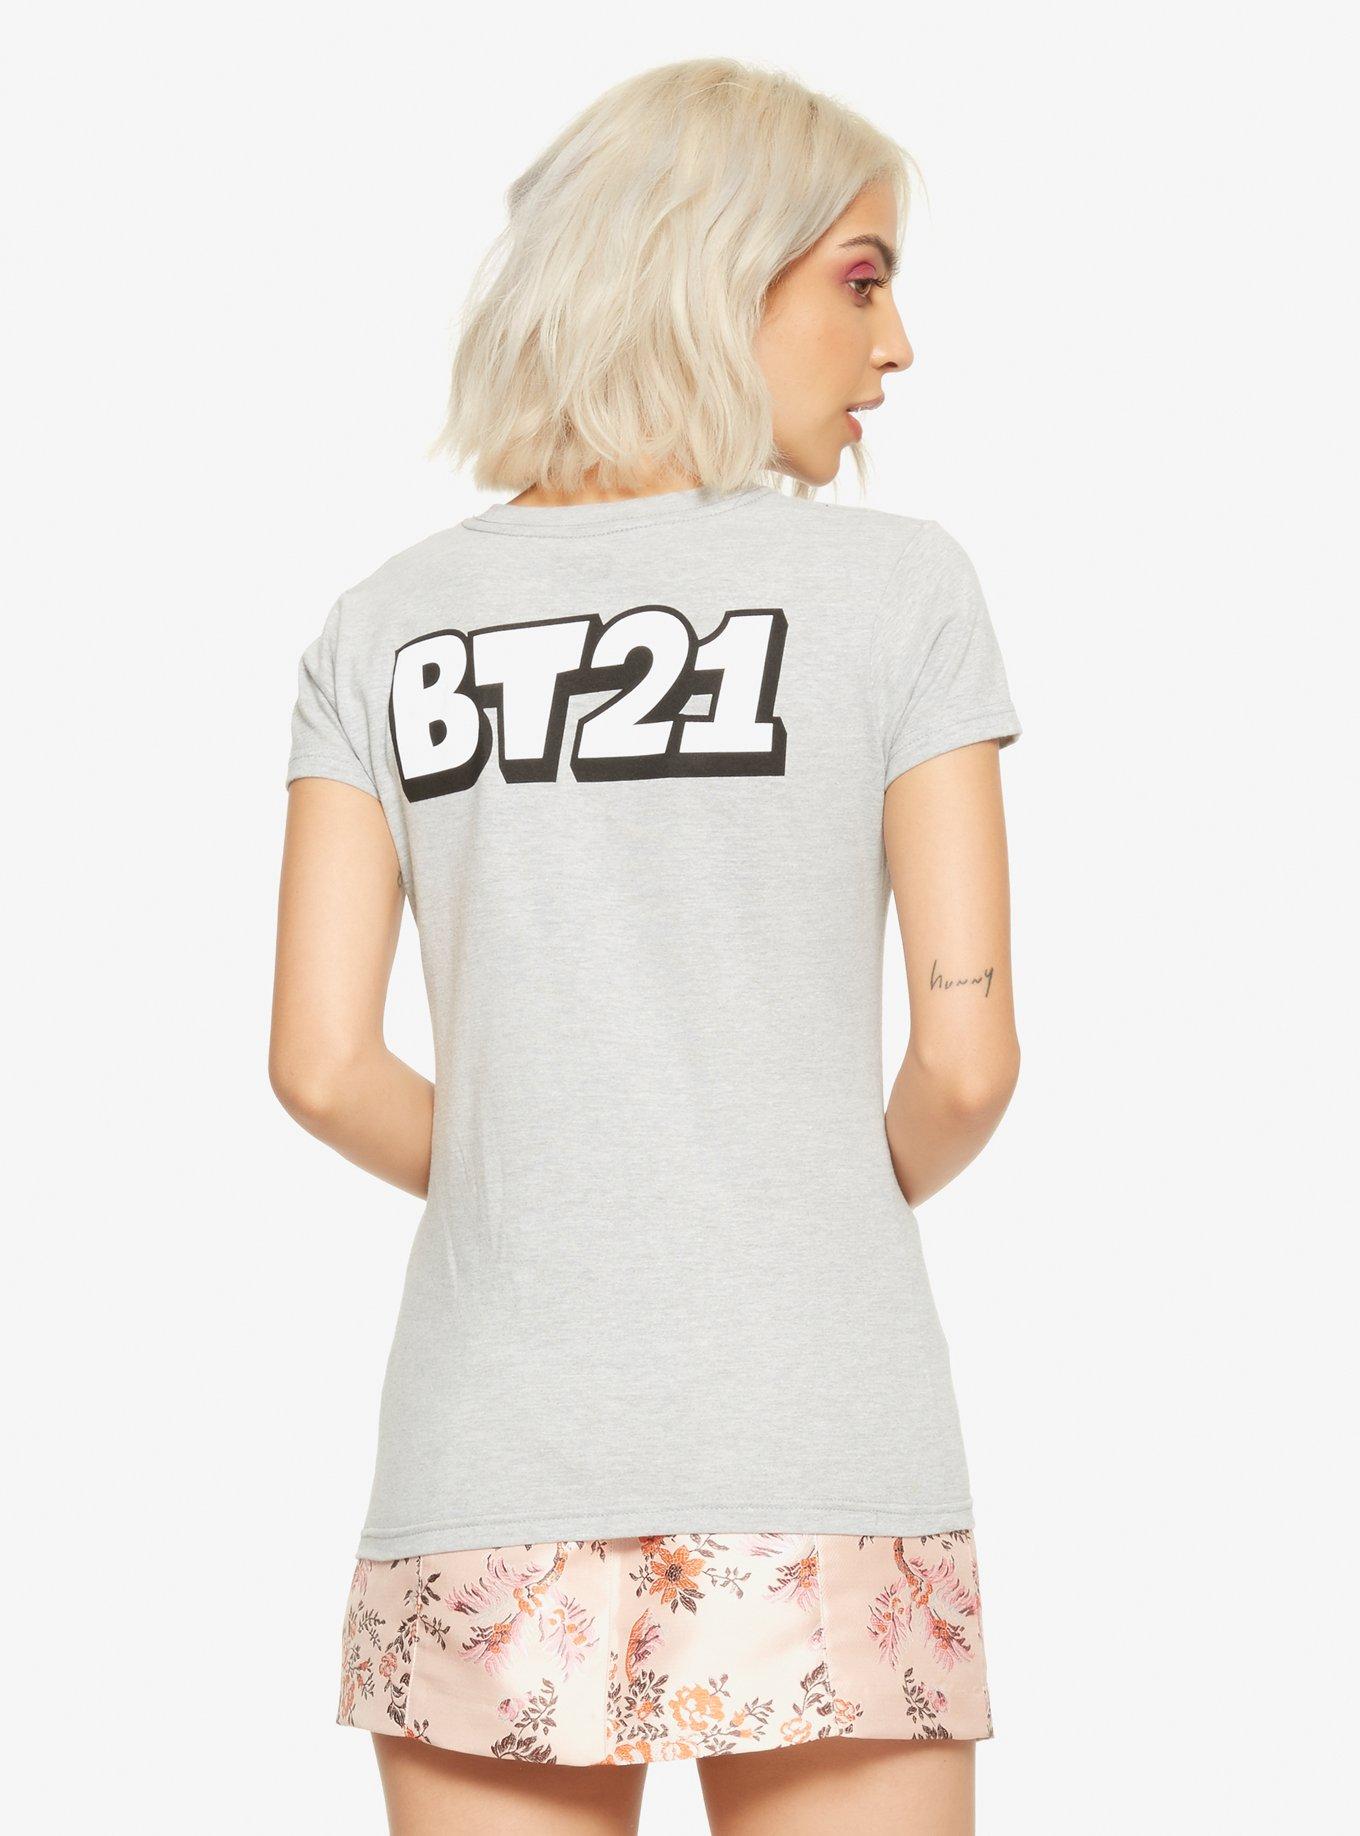 BT21 Group Sitting Girls T-Shirt, MULTI, alternate